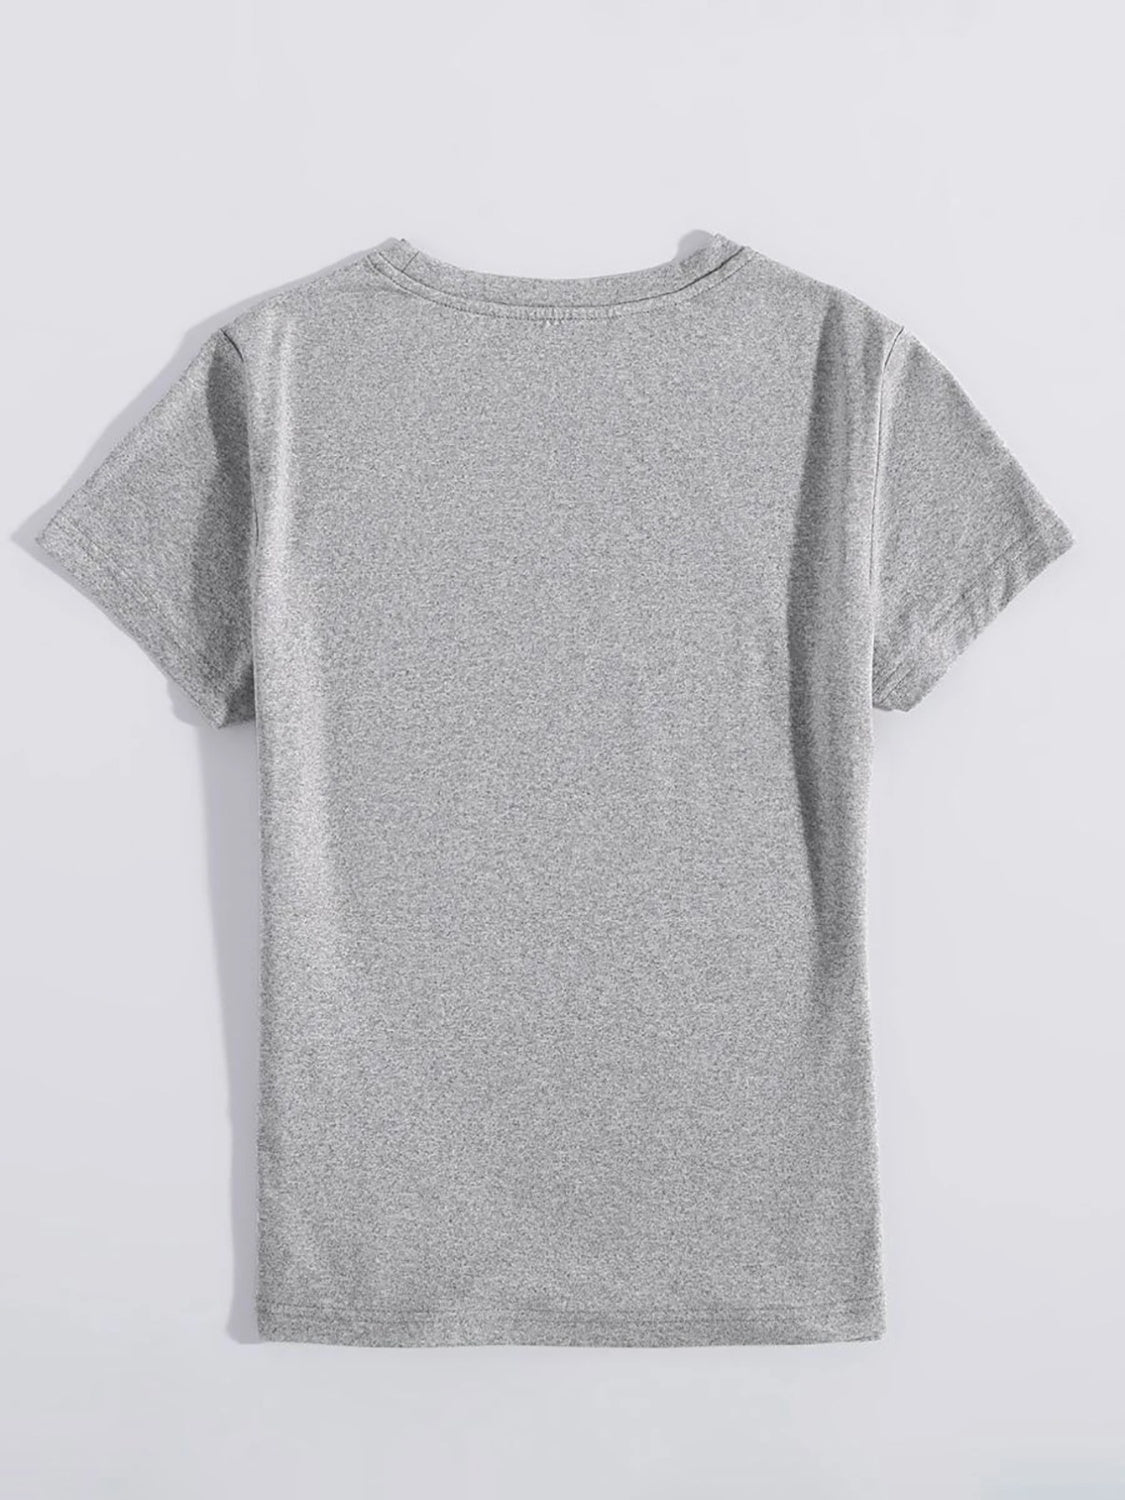 PREORDER- Rabbit Round Neck Short Sleeve T-Shirt